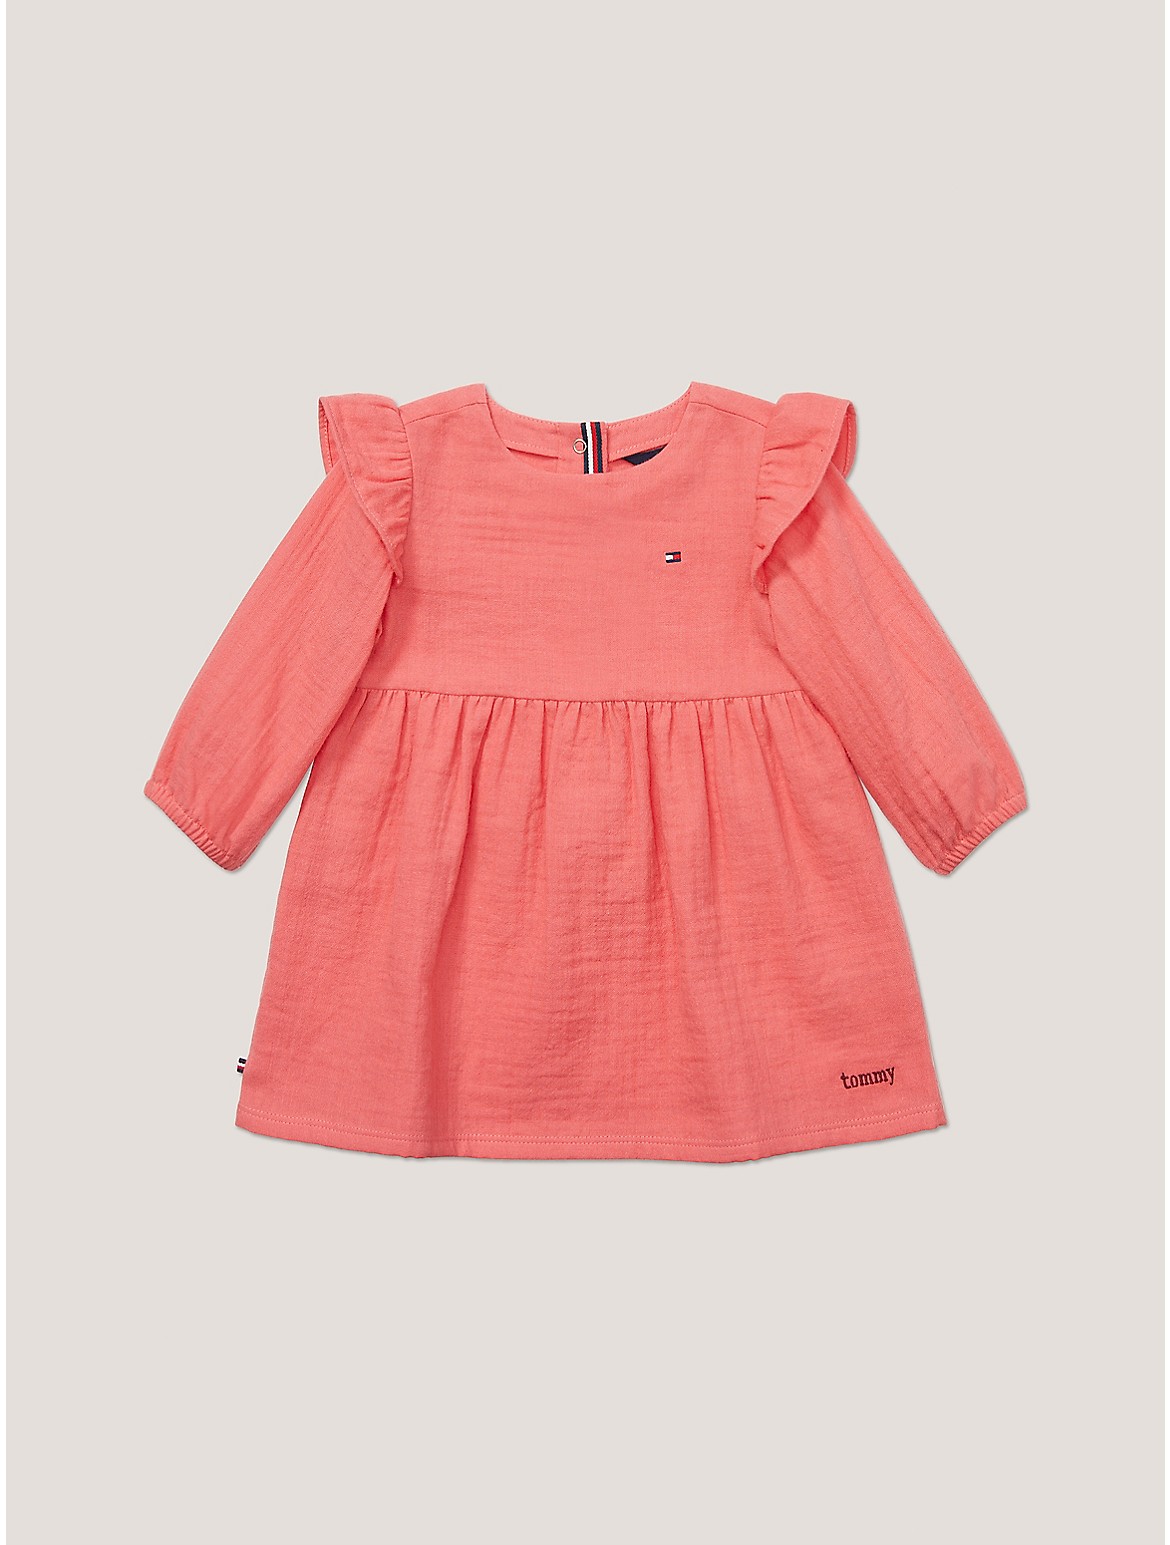 Tommy Hilfiger Girls' Babies' Muslin Frill Dress - Pink - 18M